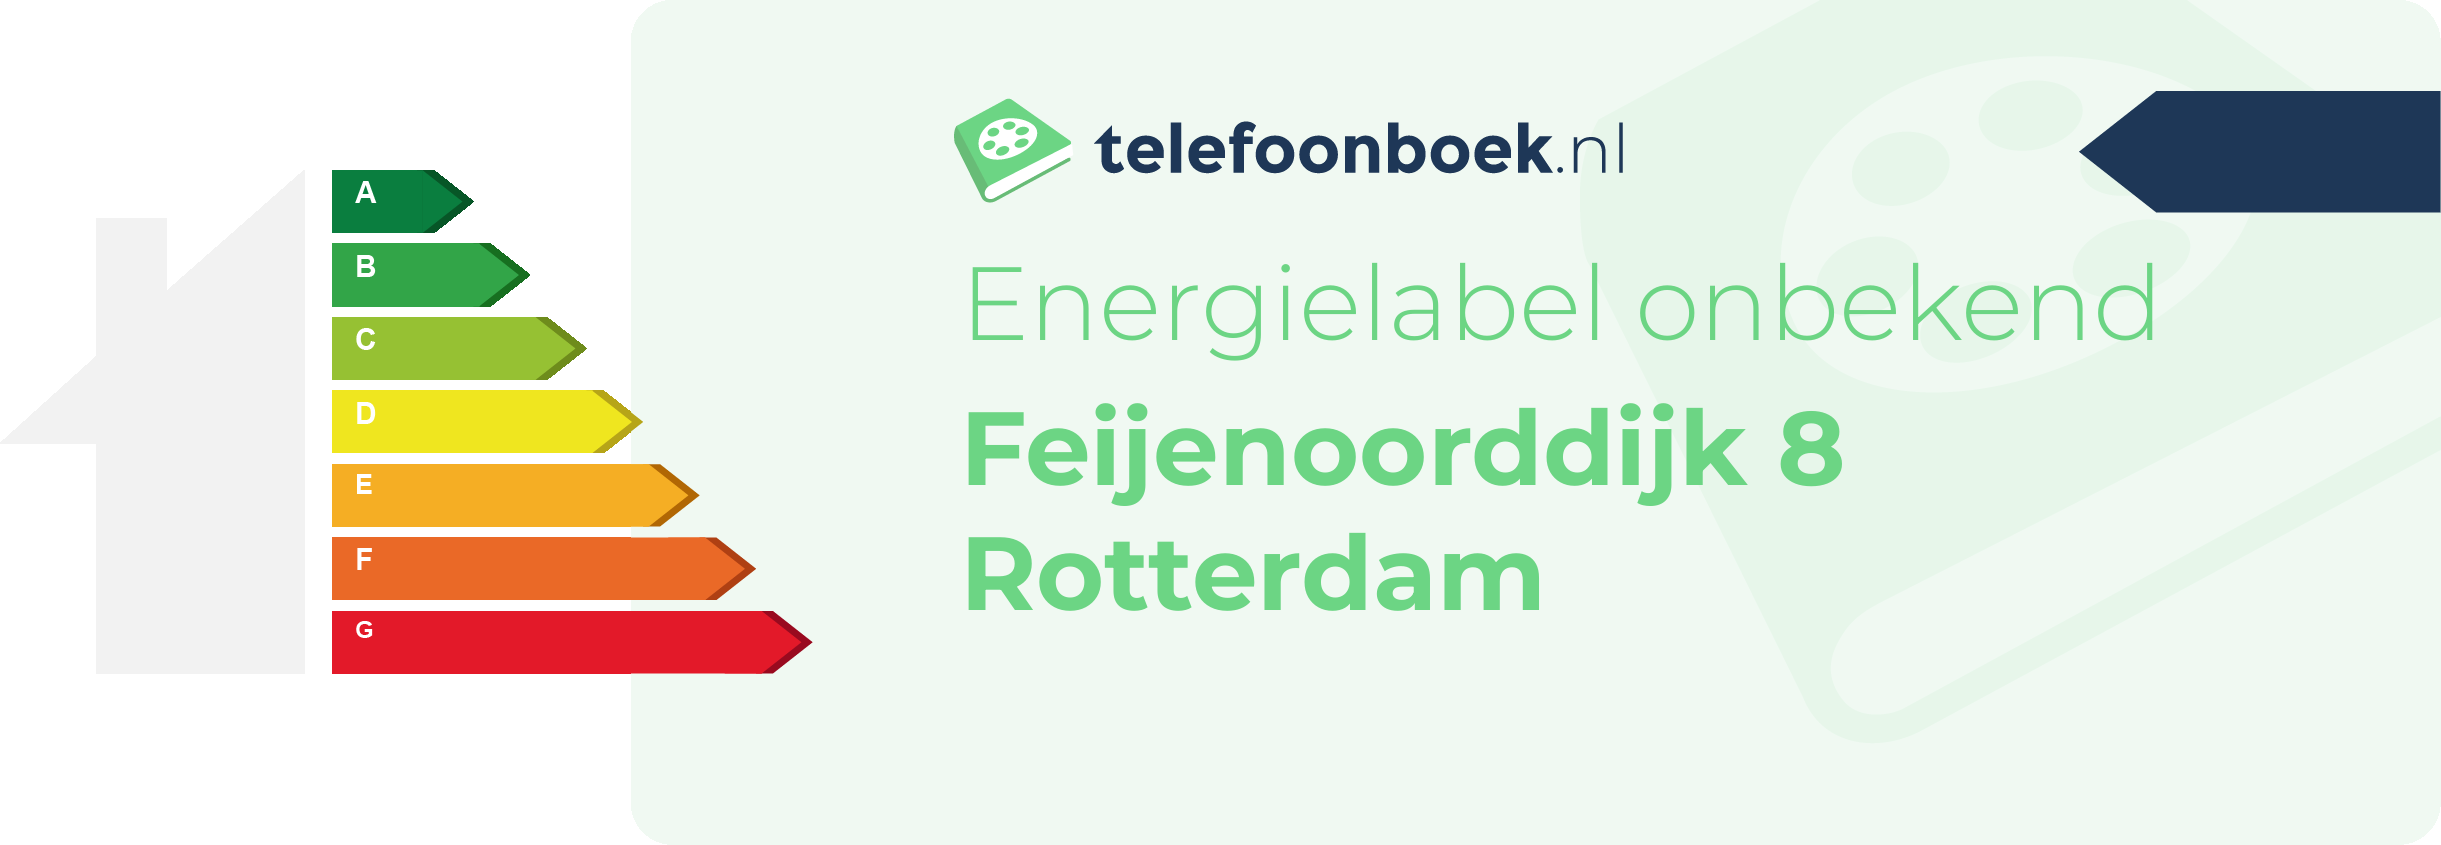 Energielabel Feijenoorddijk 8 Rotterdam